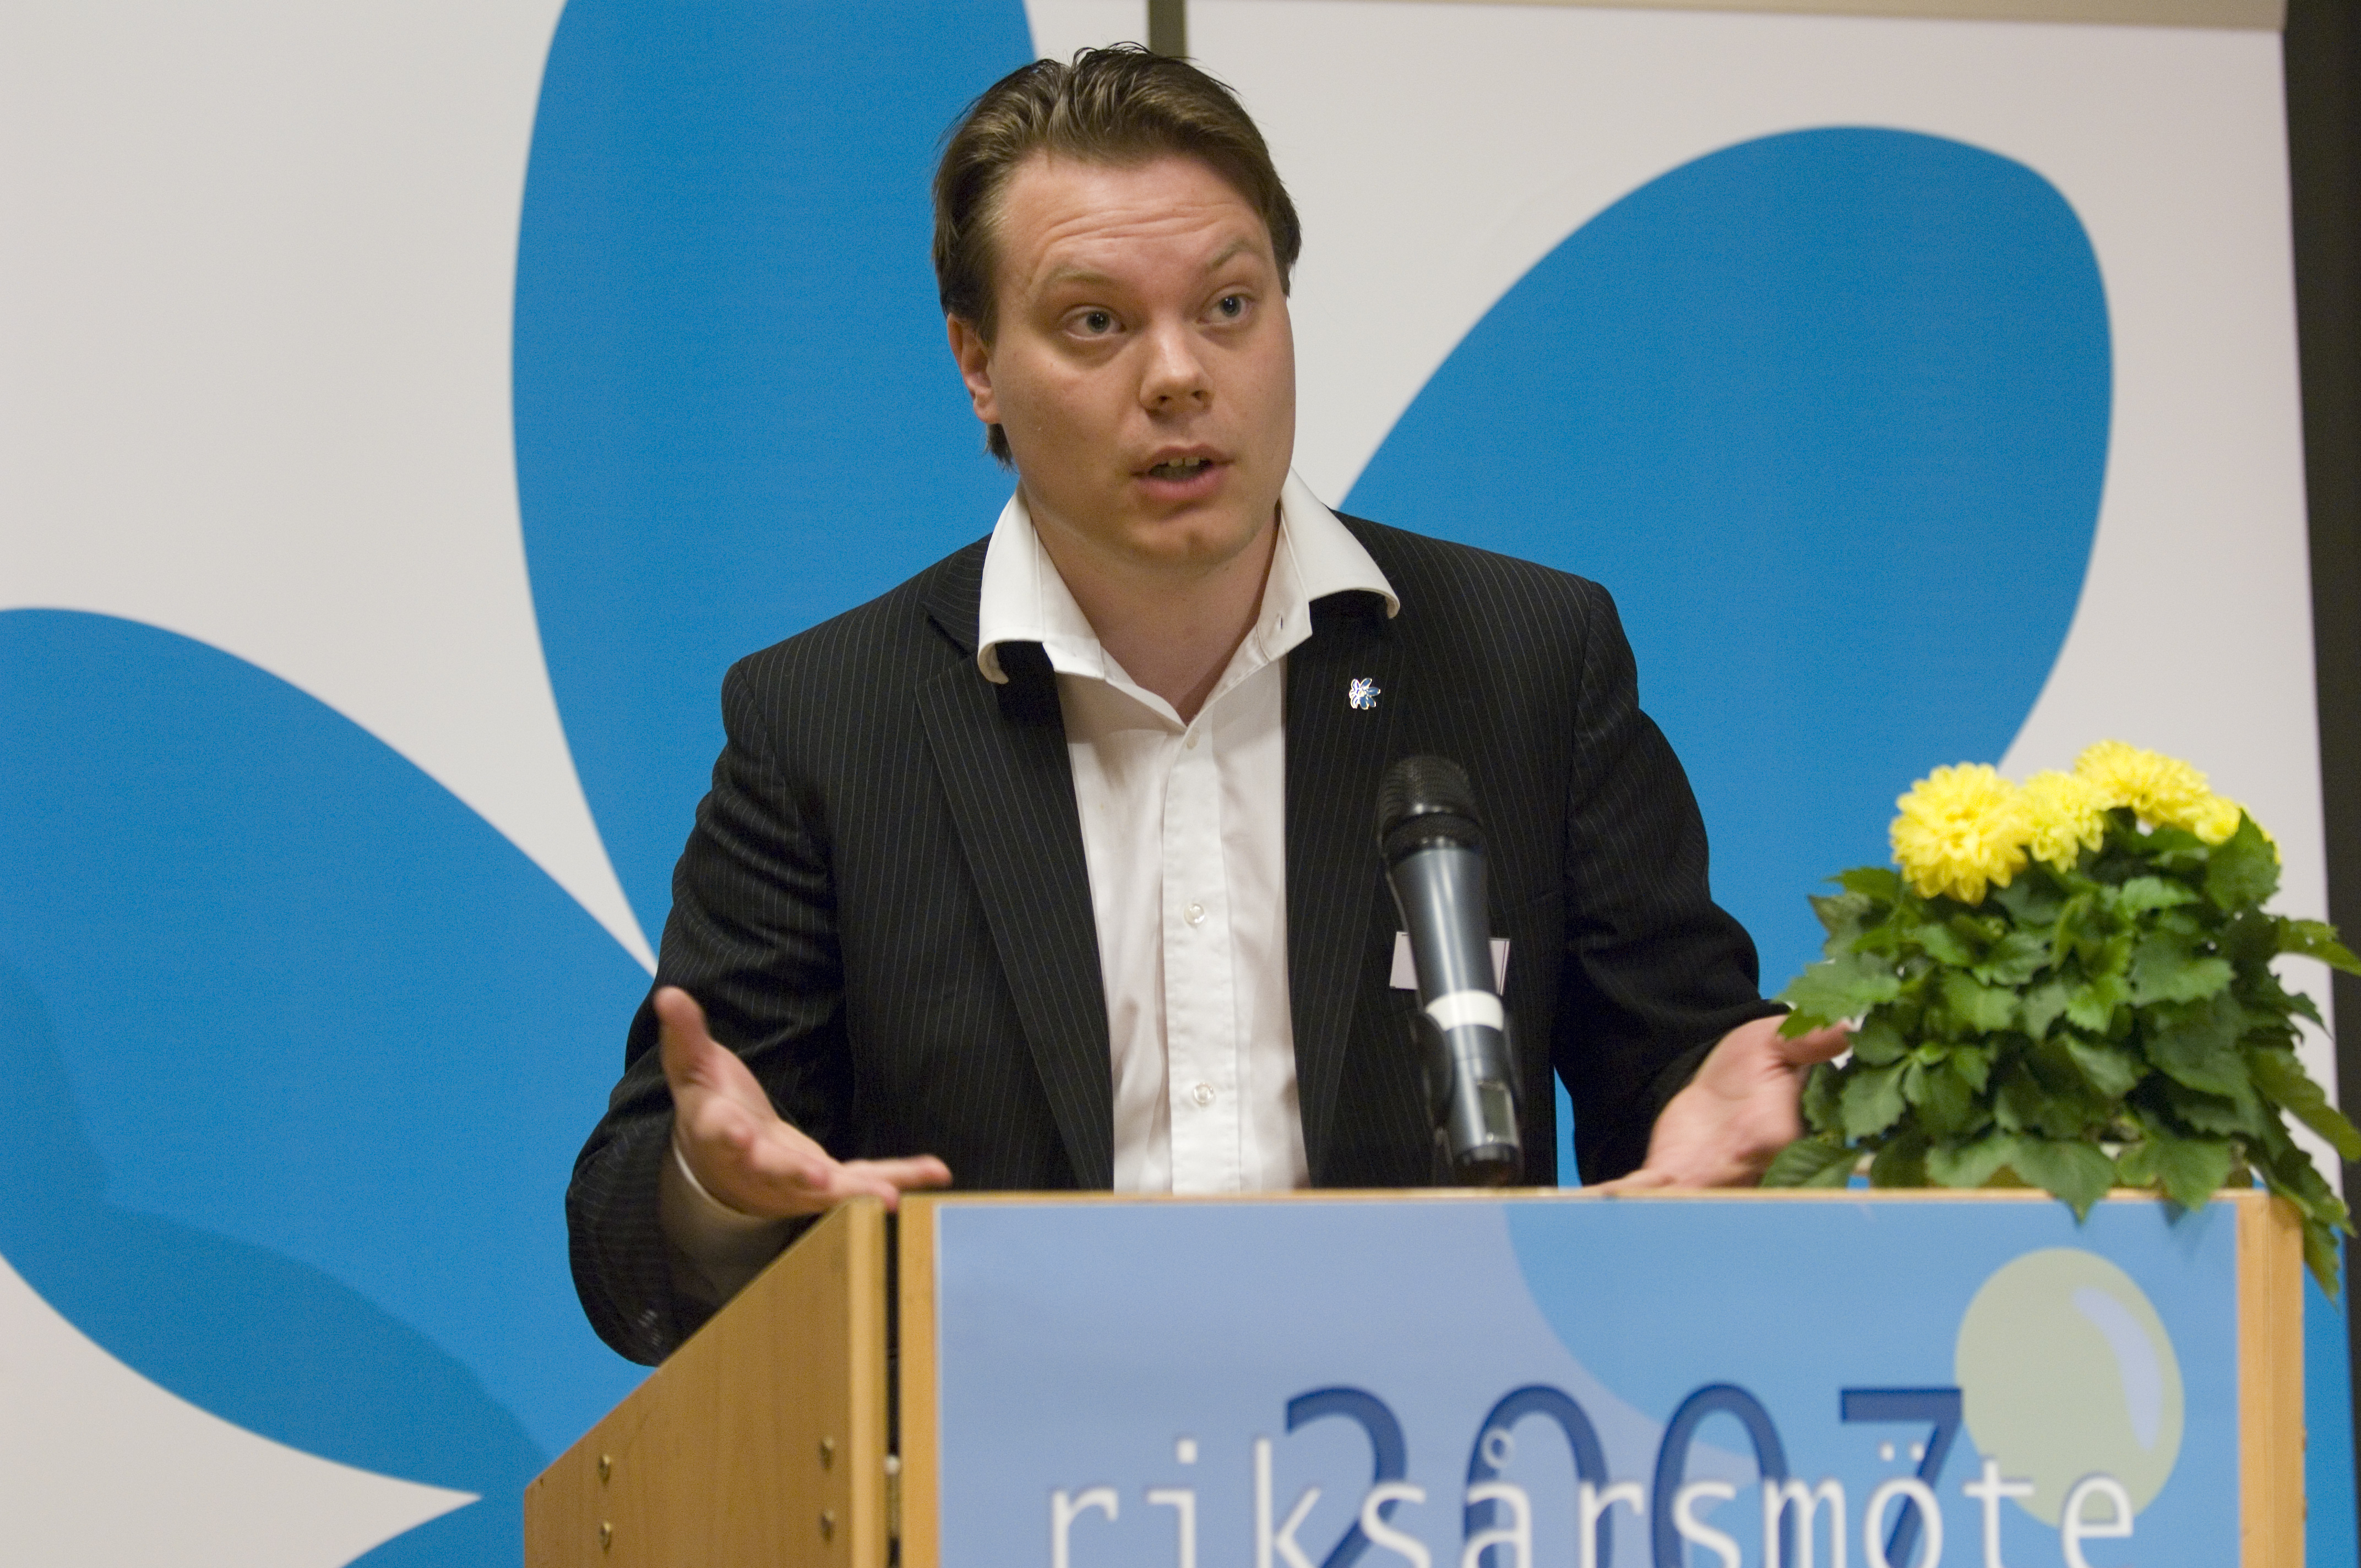 Press, Sverigedemokraterna, Anders Behring Breivik, Diskussion, Politik, Oslo, Debatt